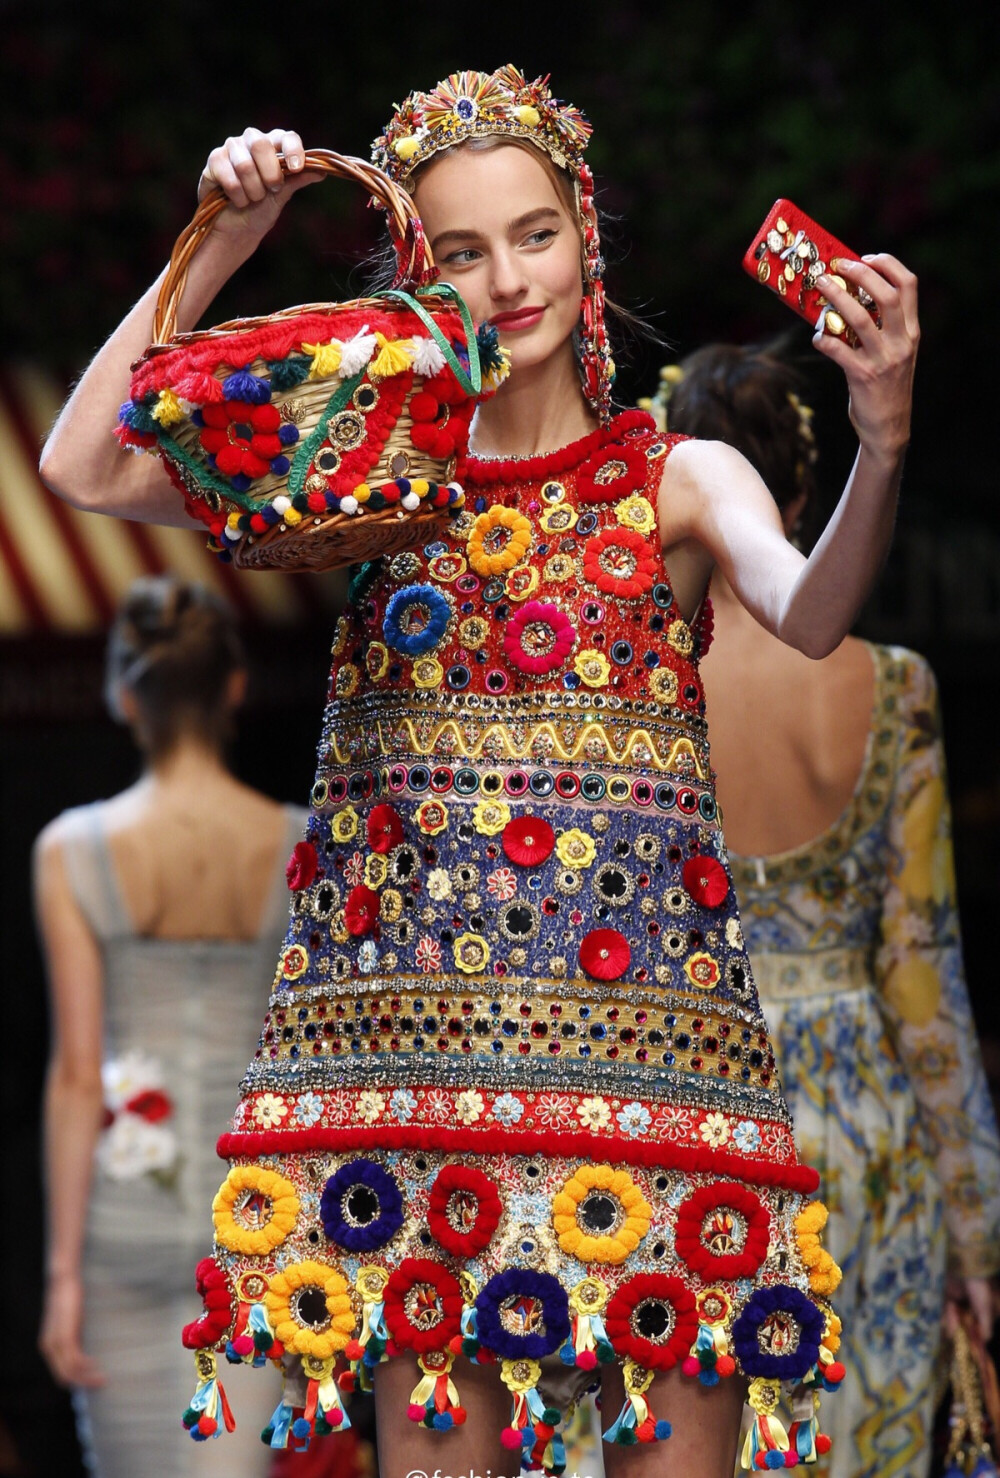 【衣睹为快时装周】 西西里少女的浪漫情怀 浮华的复兴 Dolce·Gabbana Spring 2016 RTW细节之美 。时装周 华服霓裳 服饰风尚